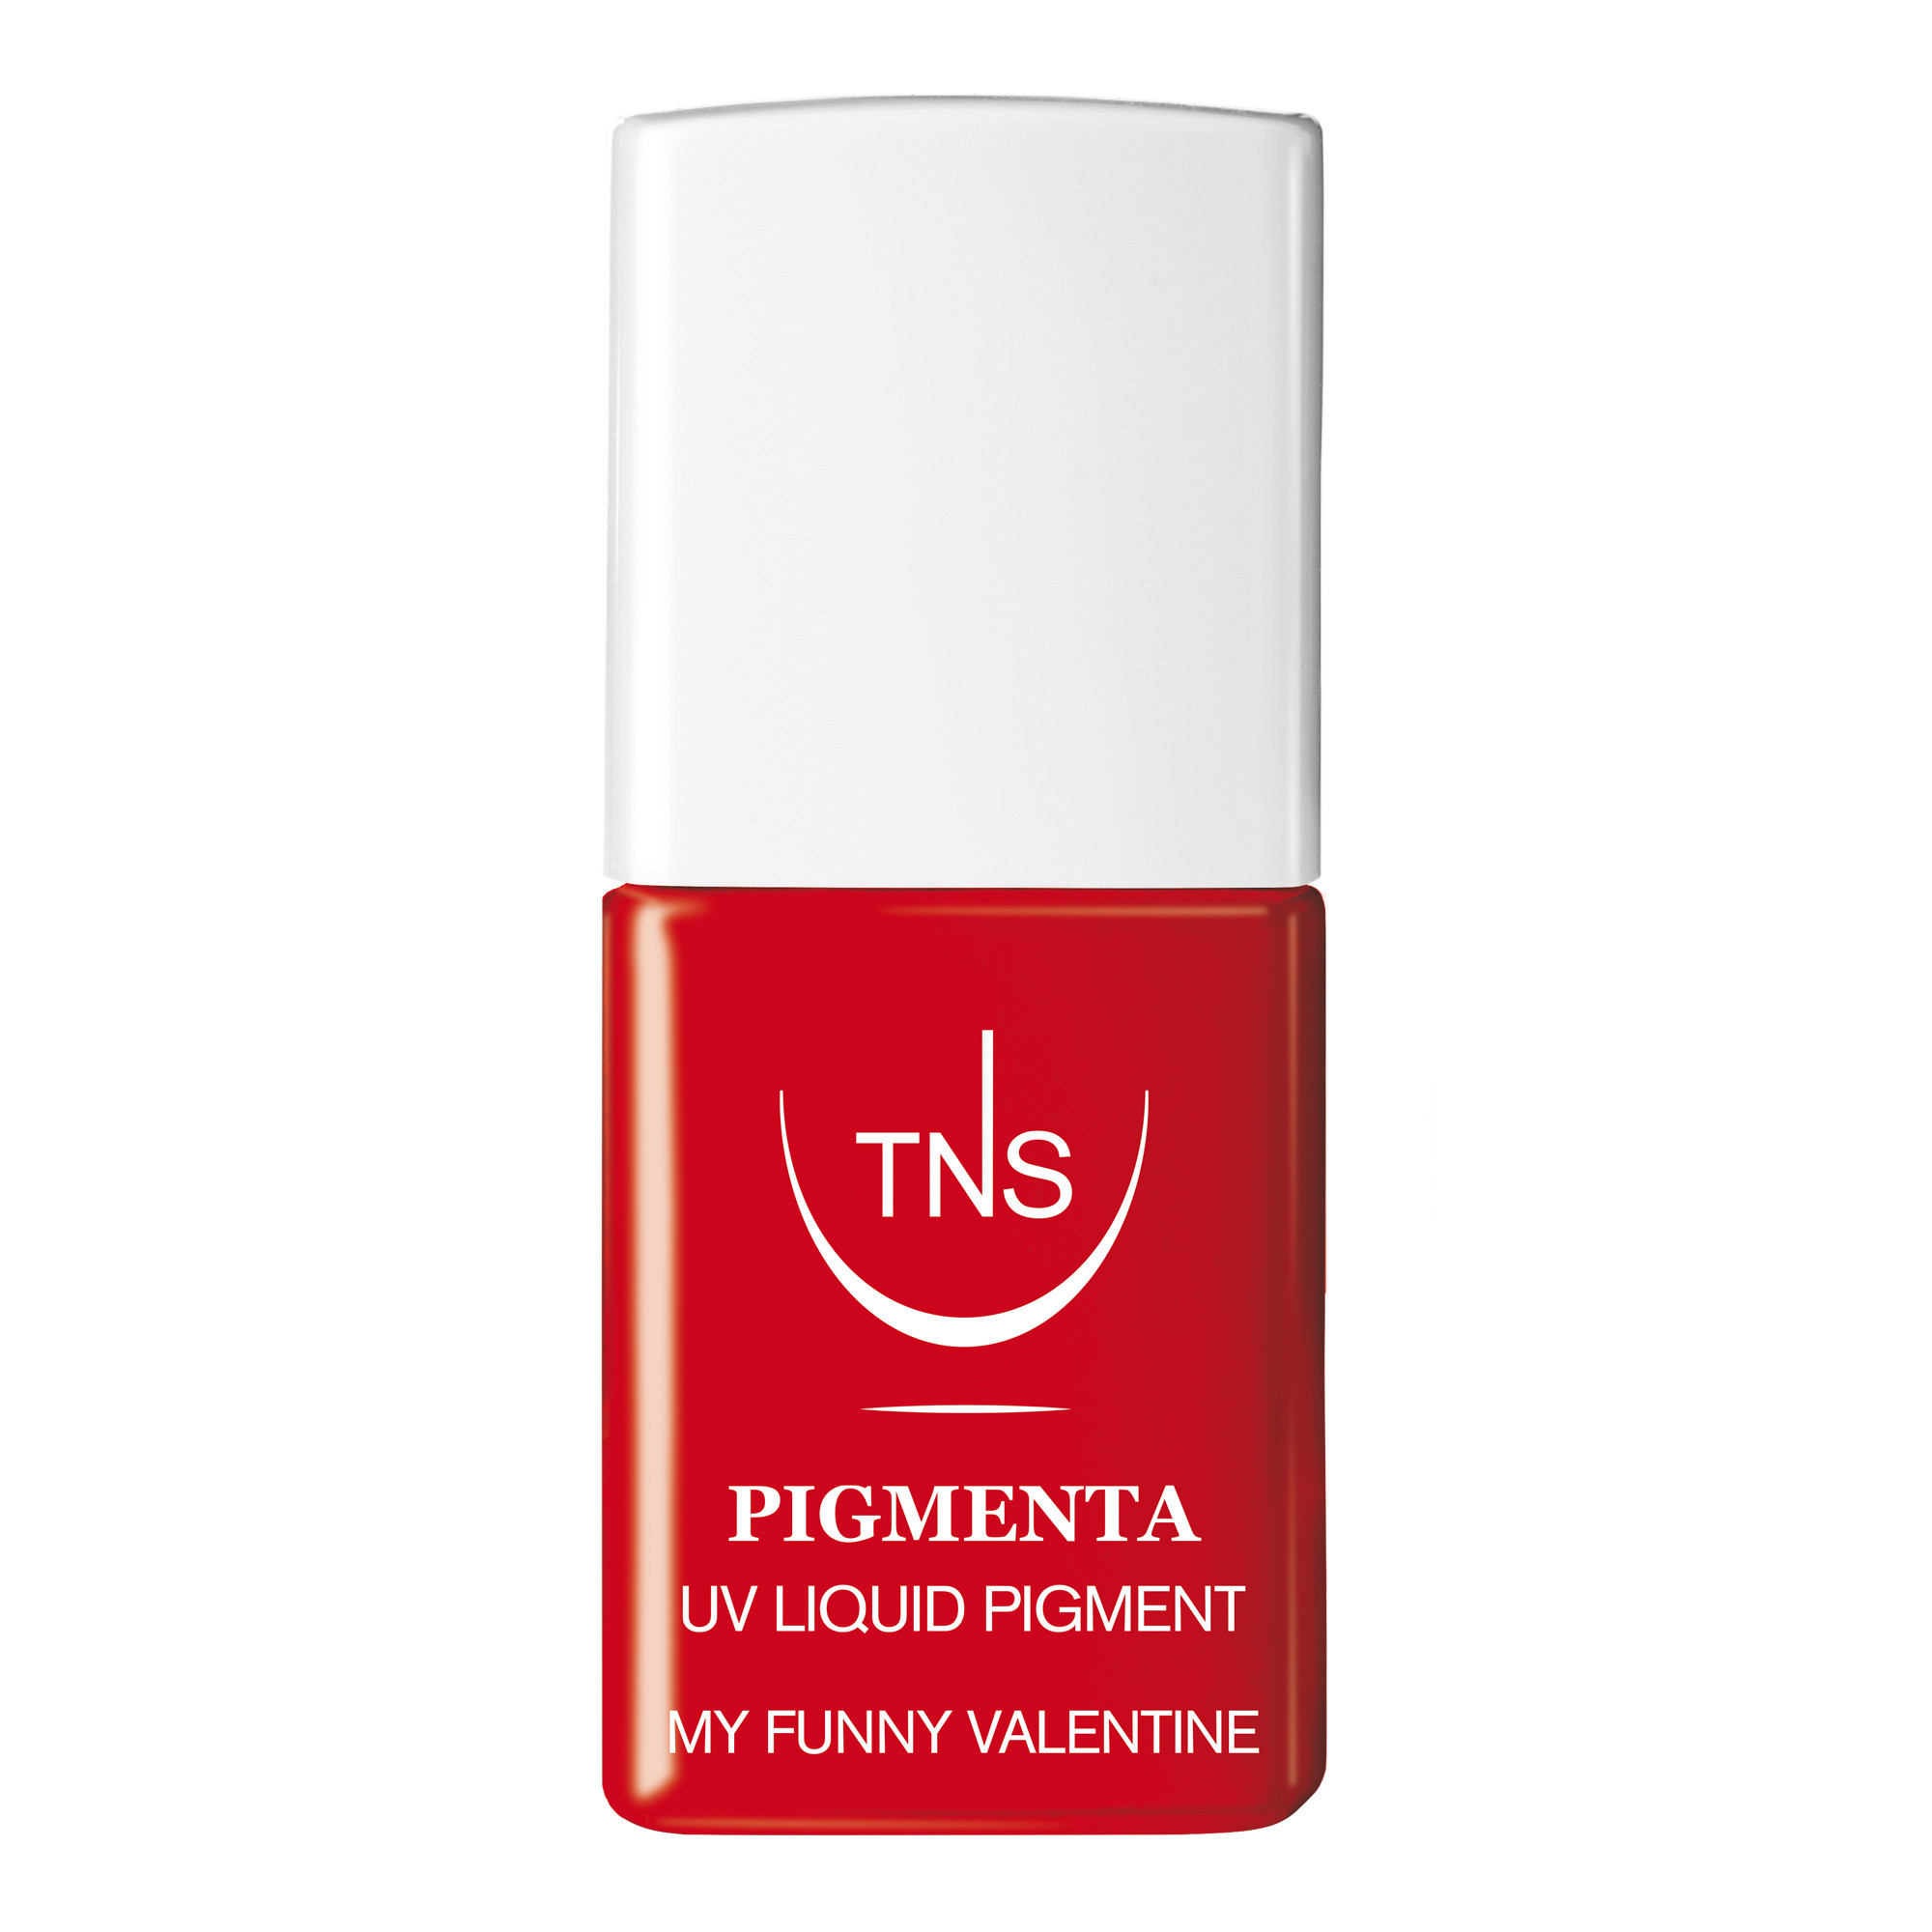 Pigmento Liquido UV My Funny Valentine rosso  10 ml Pigmenta TNS